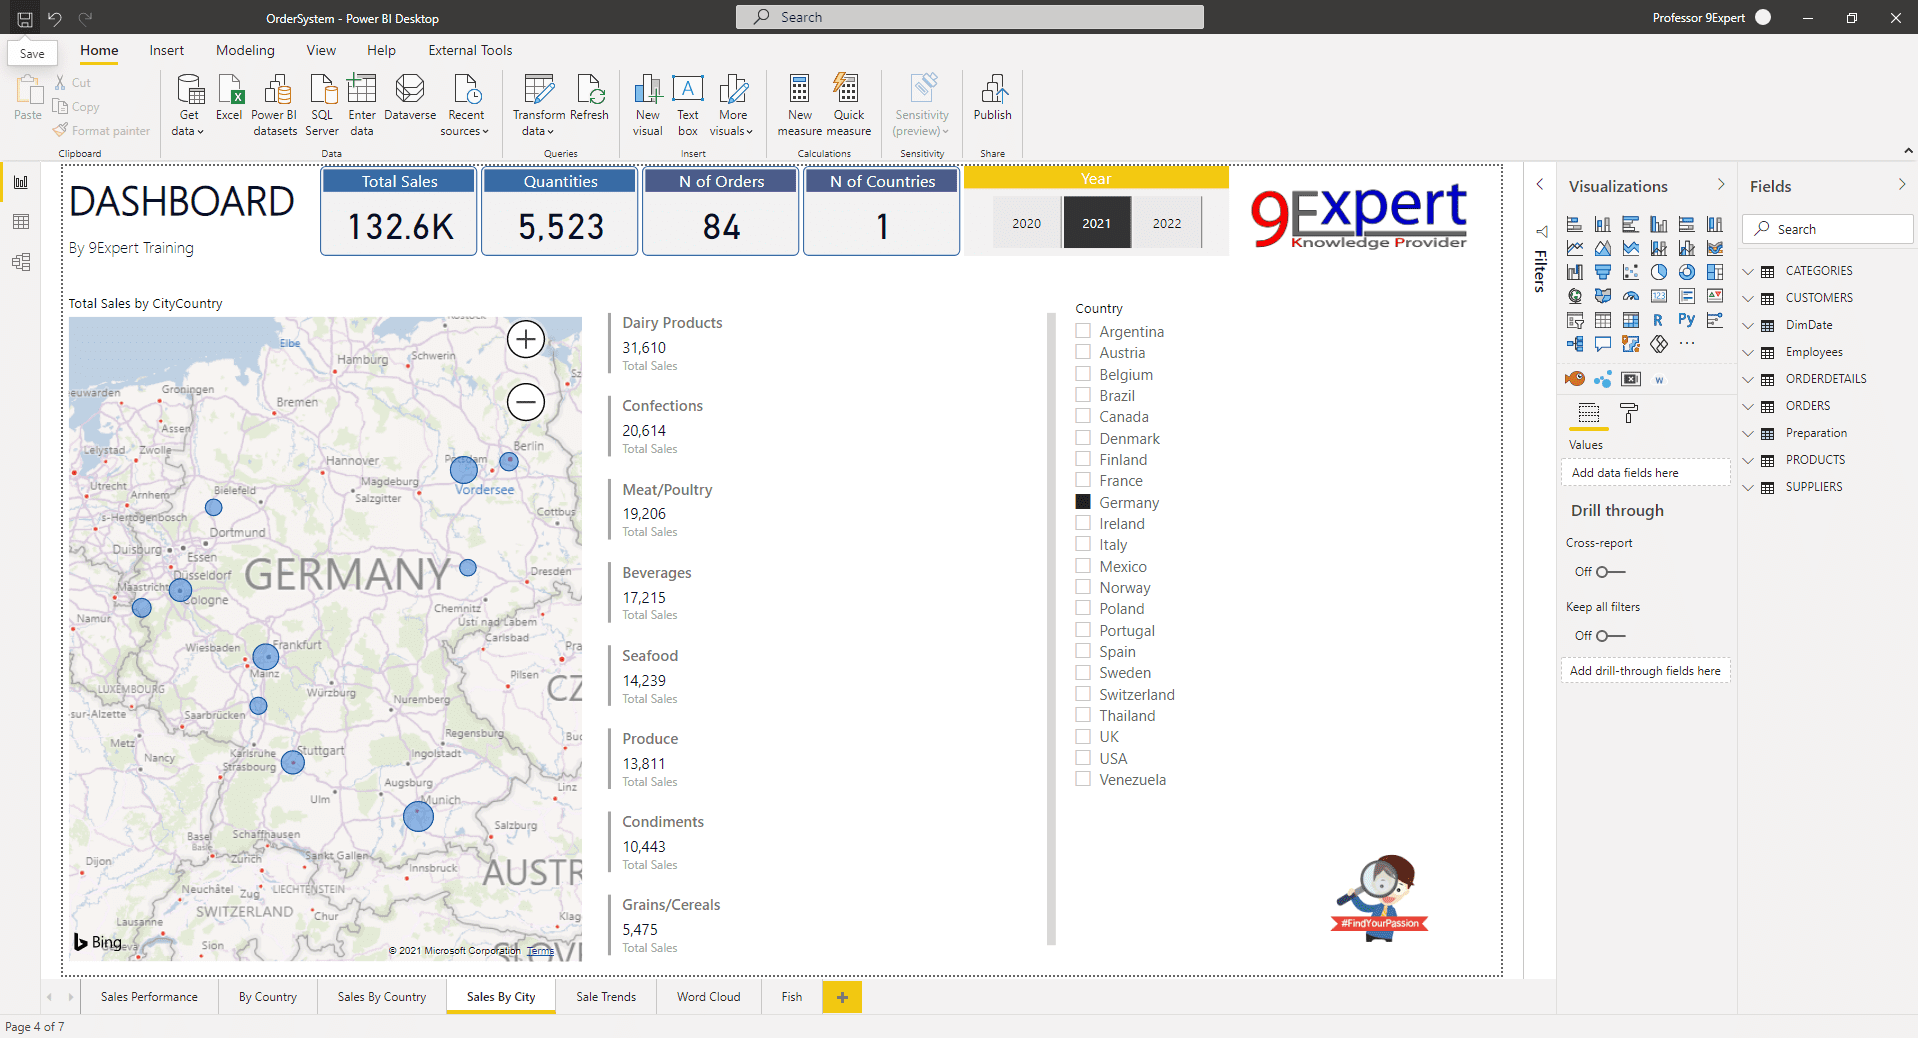 โปรแกรม Power BI Desktop มุมมอง Report View พร้อม มี Filter ได้